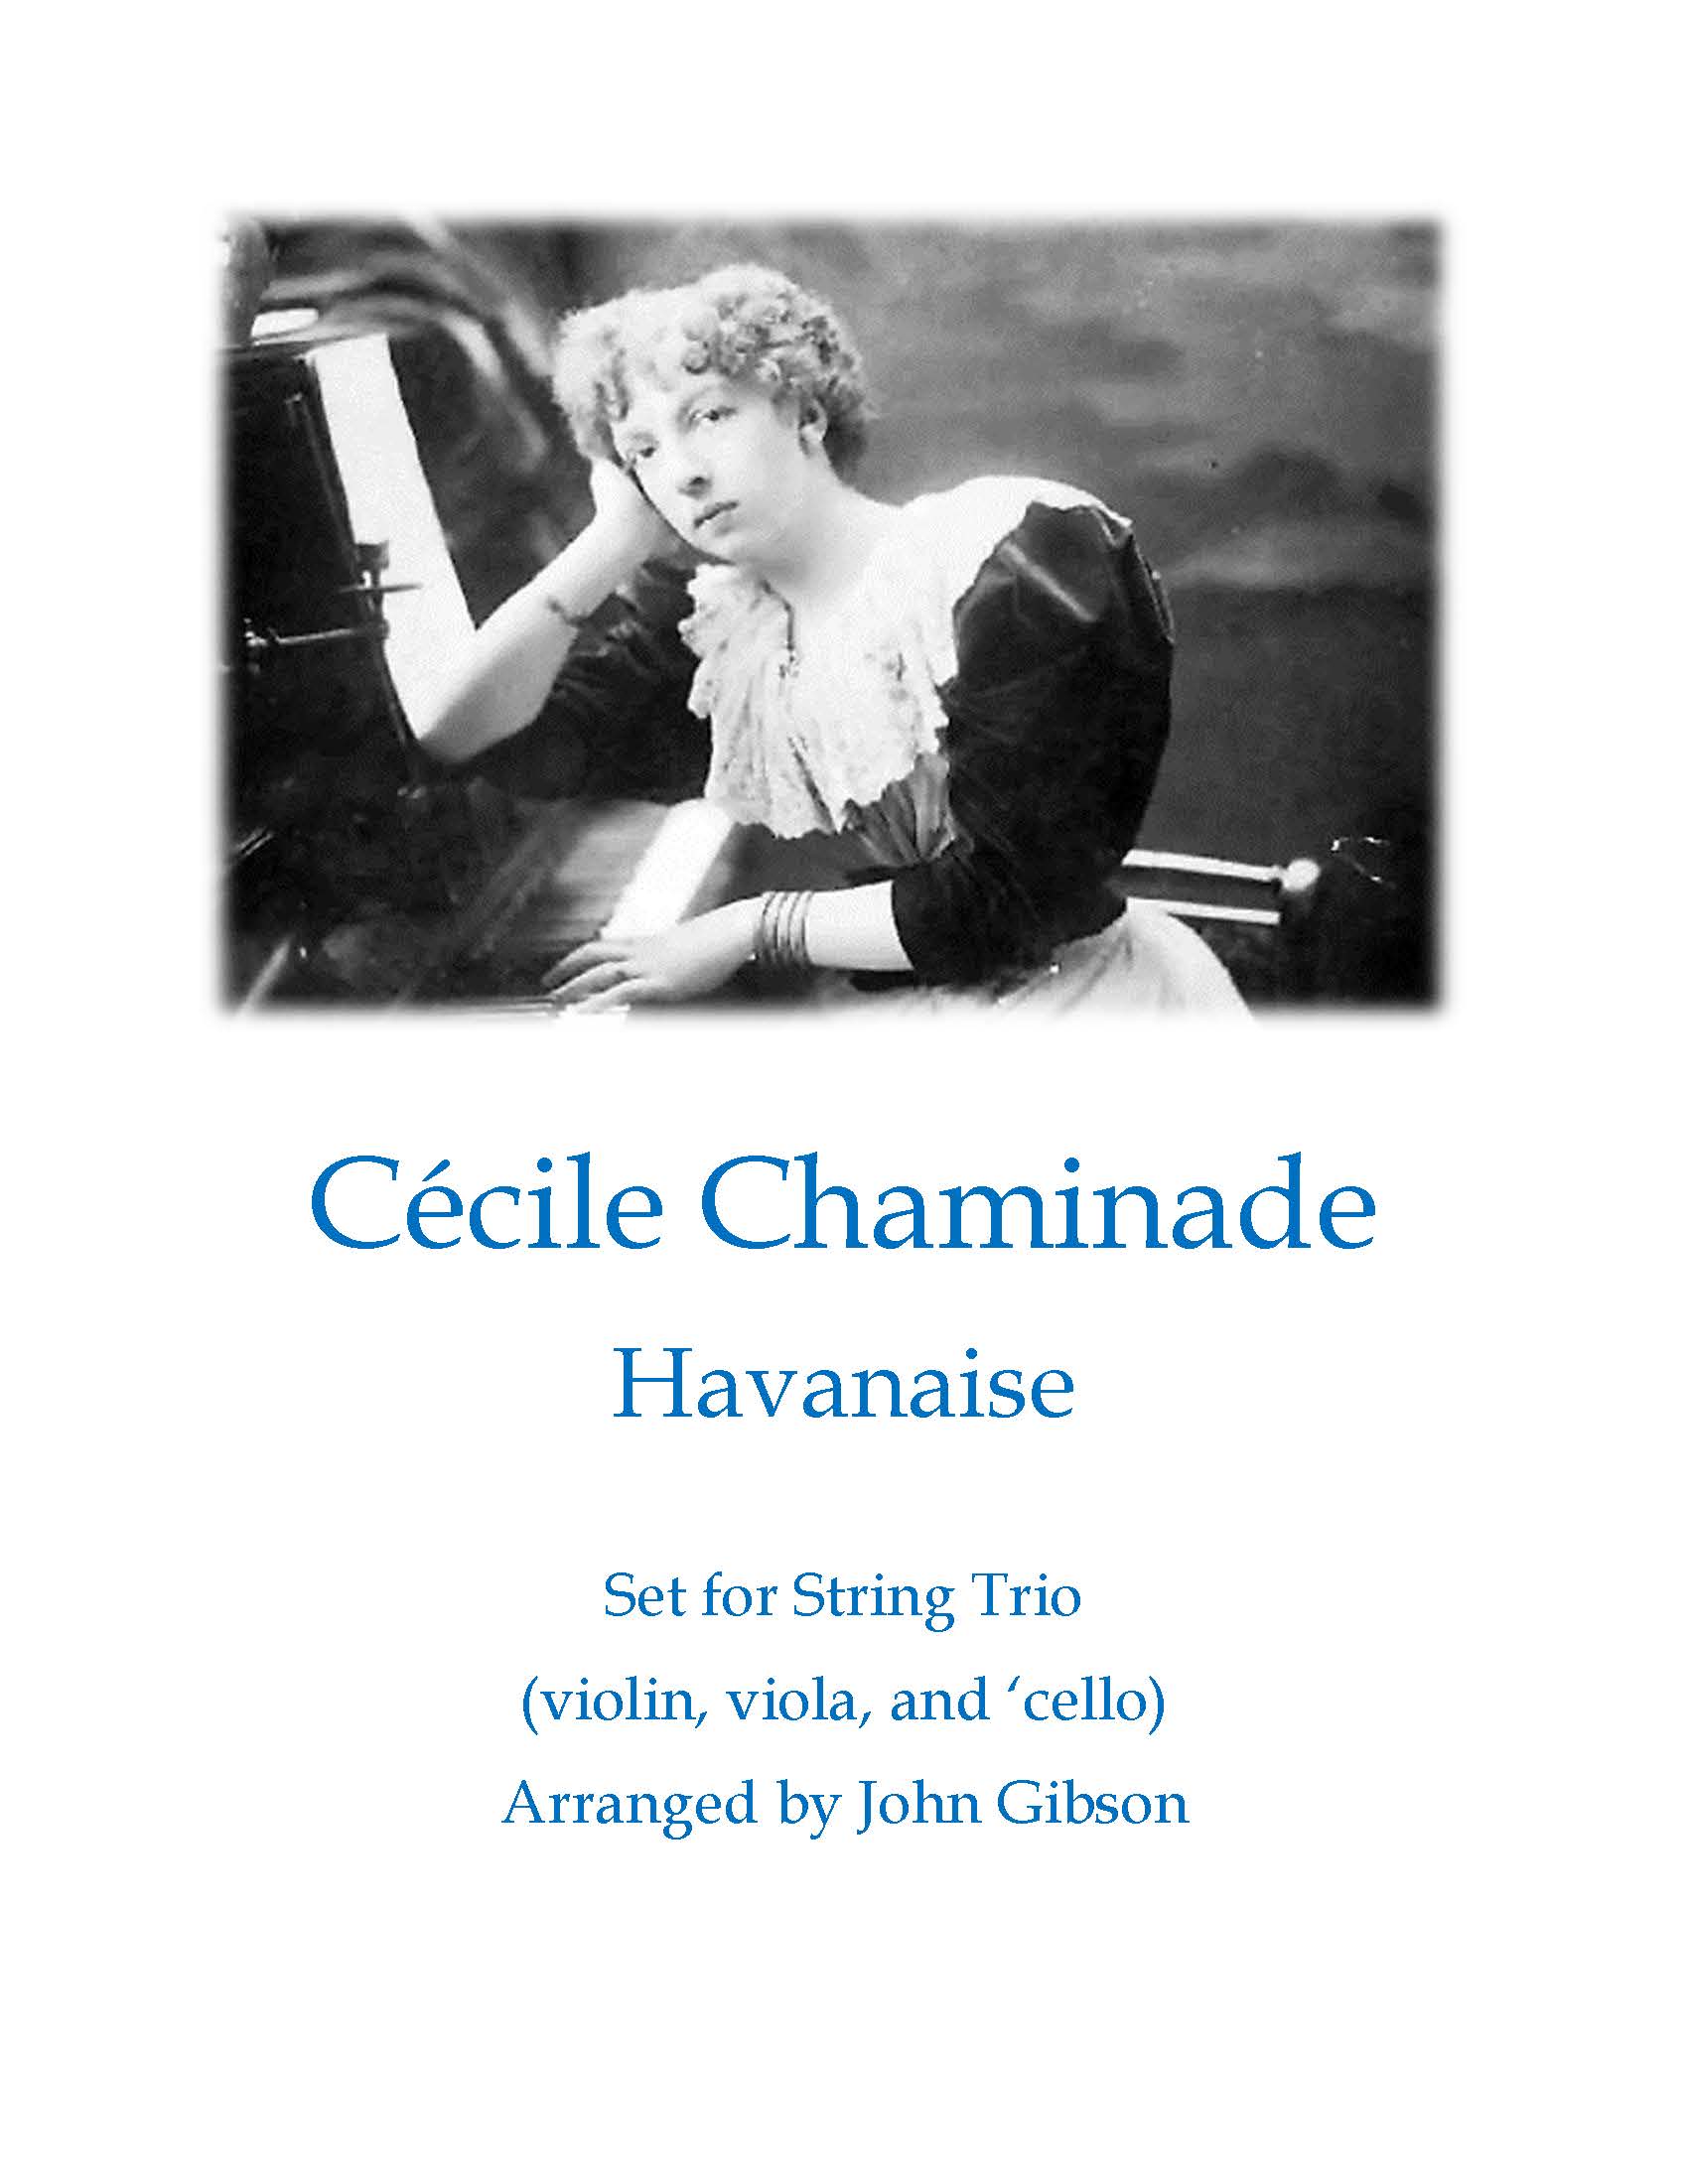 Cecile Chaminade Havanaise (Tango) for String trio